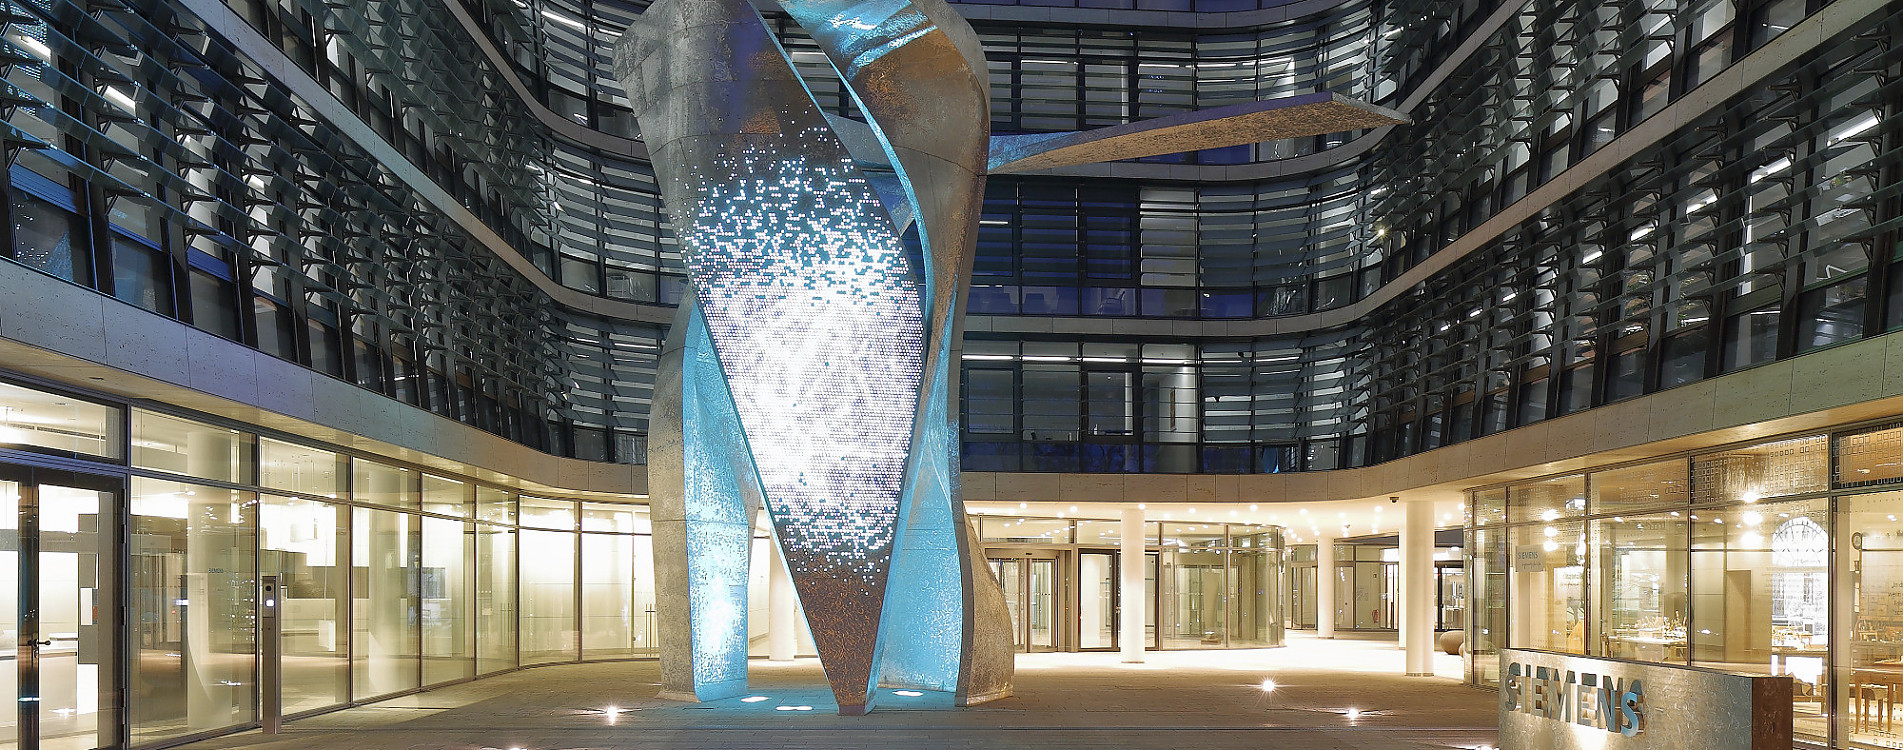 Siemens Headquarter, Munich/Germany